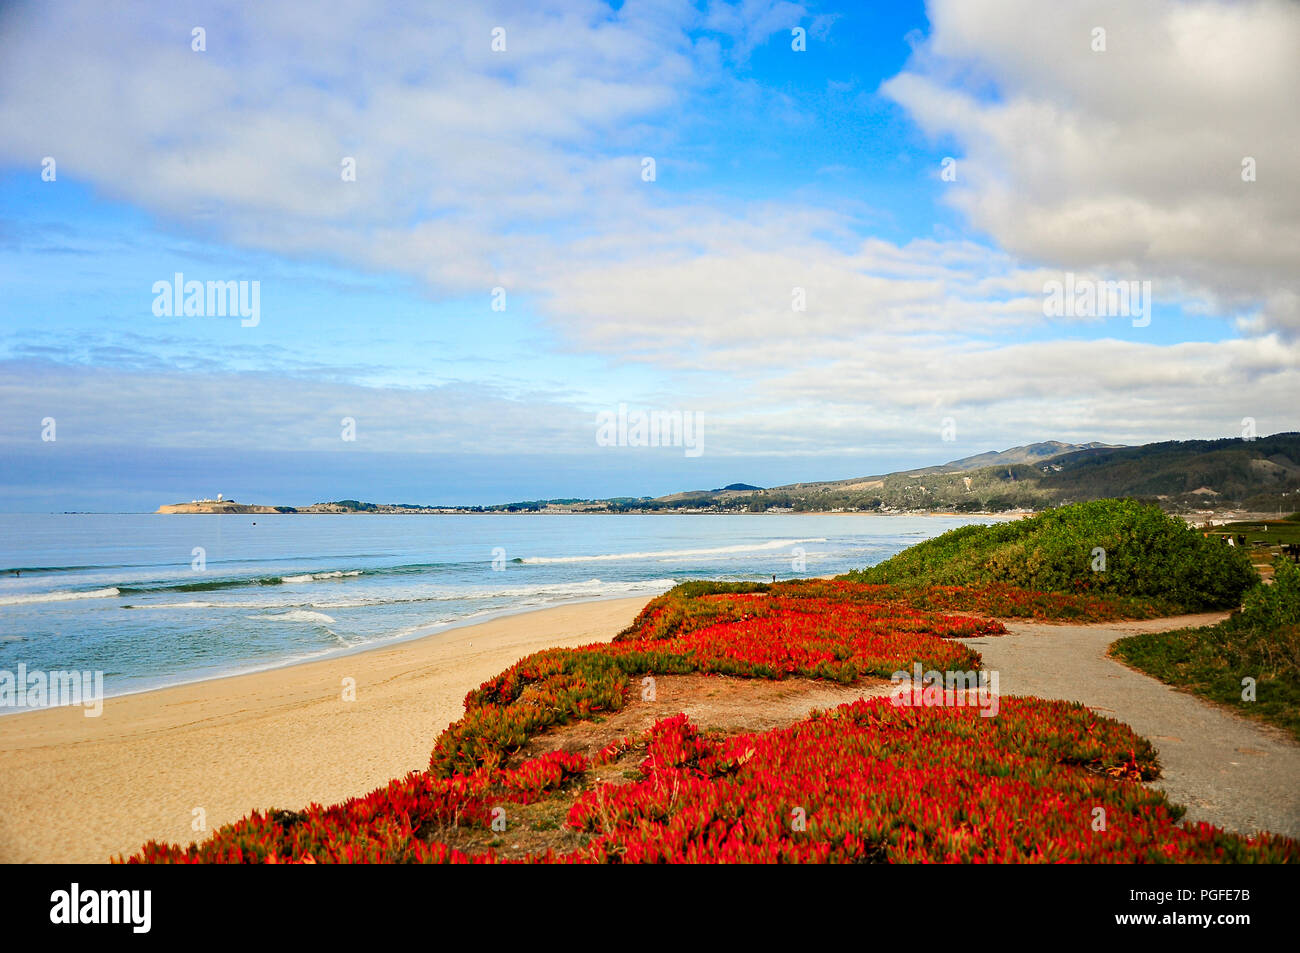 Jolie paysage marin de l'océan Pacifique, à Pebble Beach, près de Monterey, Californie. Fond brumeux avec le fracas des vagues, sable, rochers et nuage bleu ciel Banque D'Images